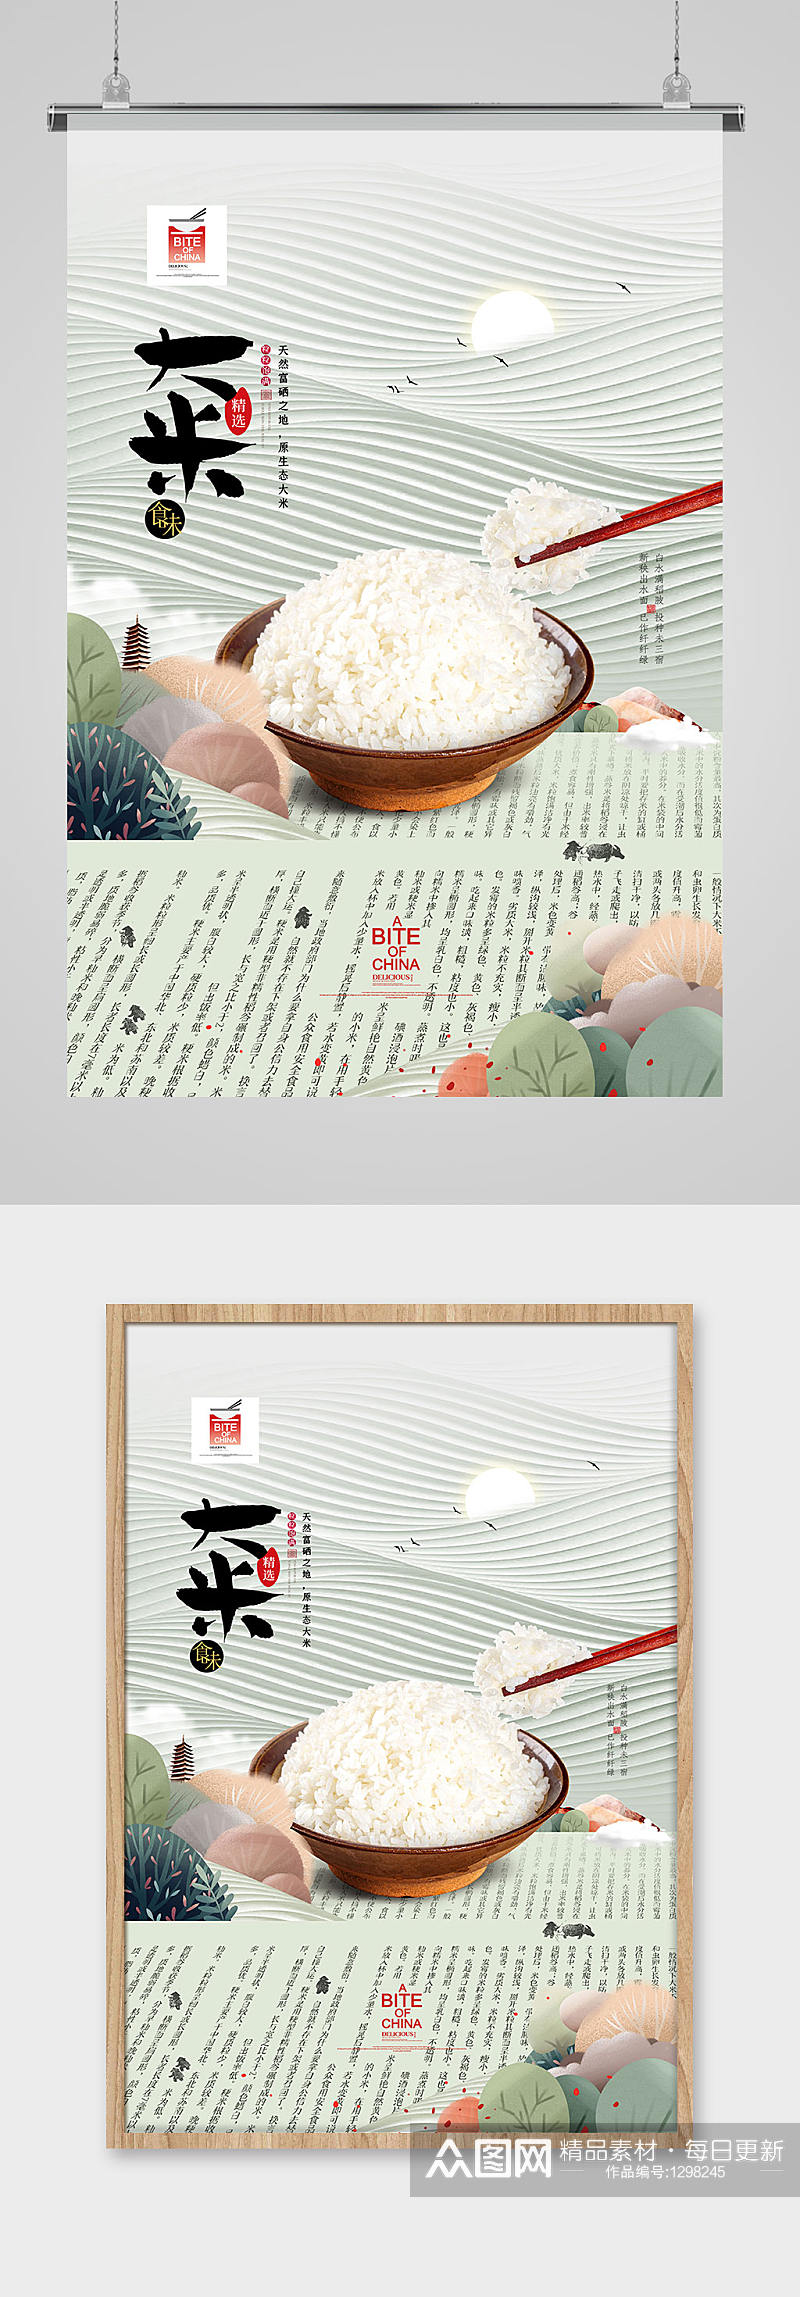 有机大米五谷杂粮舌尖上的中国美食海报素材